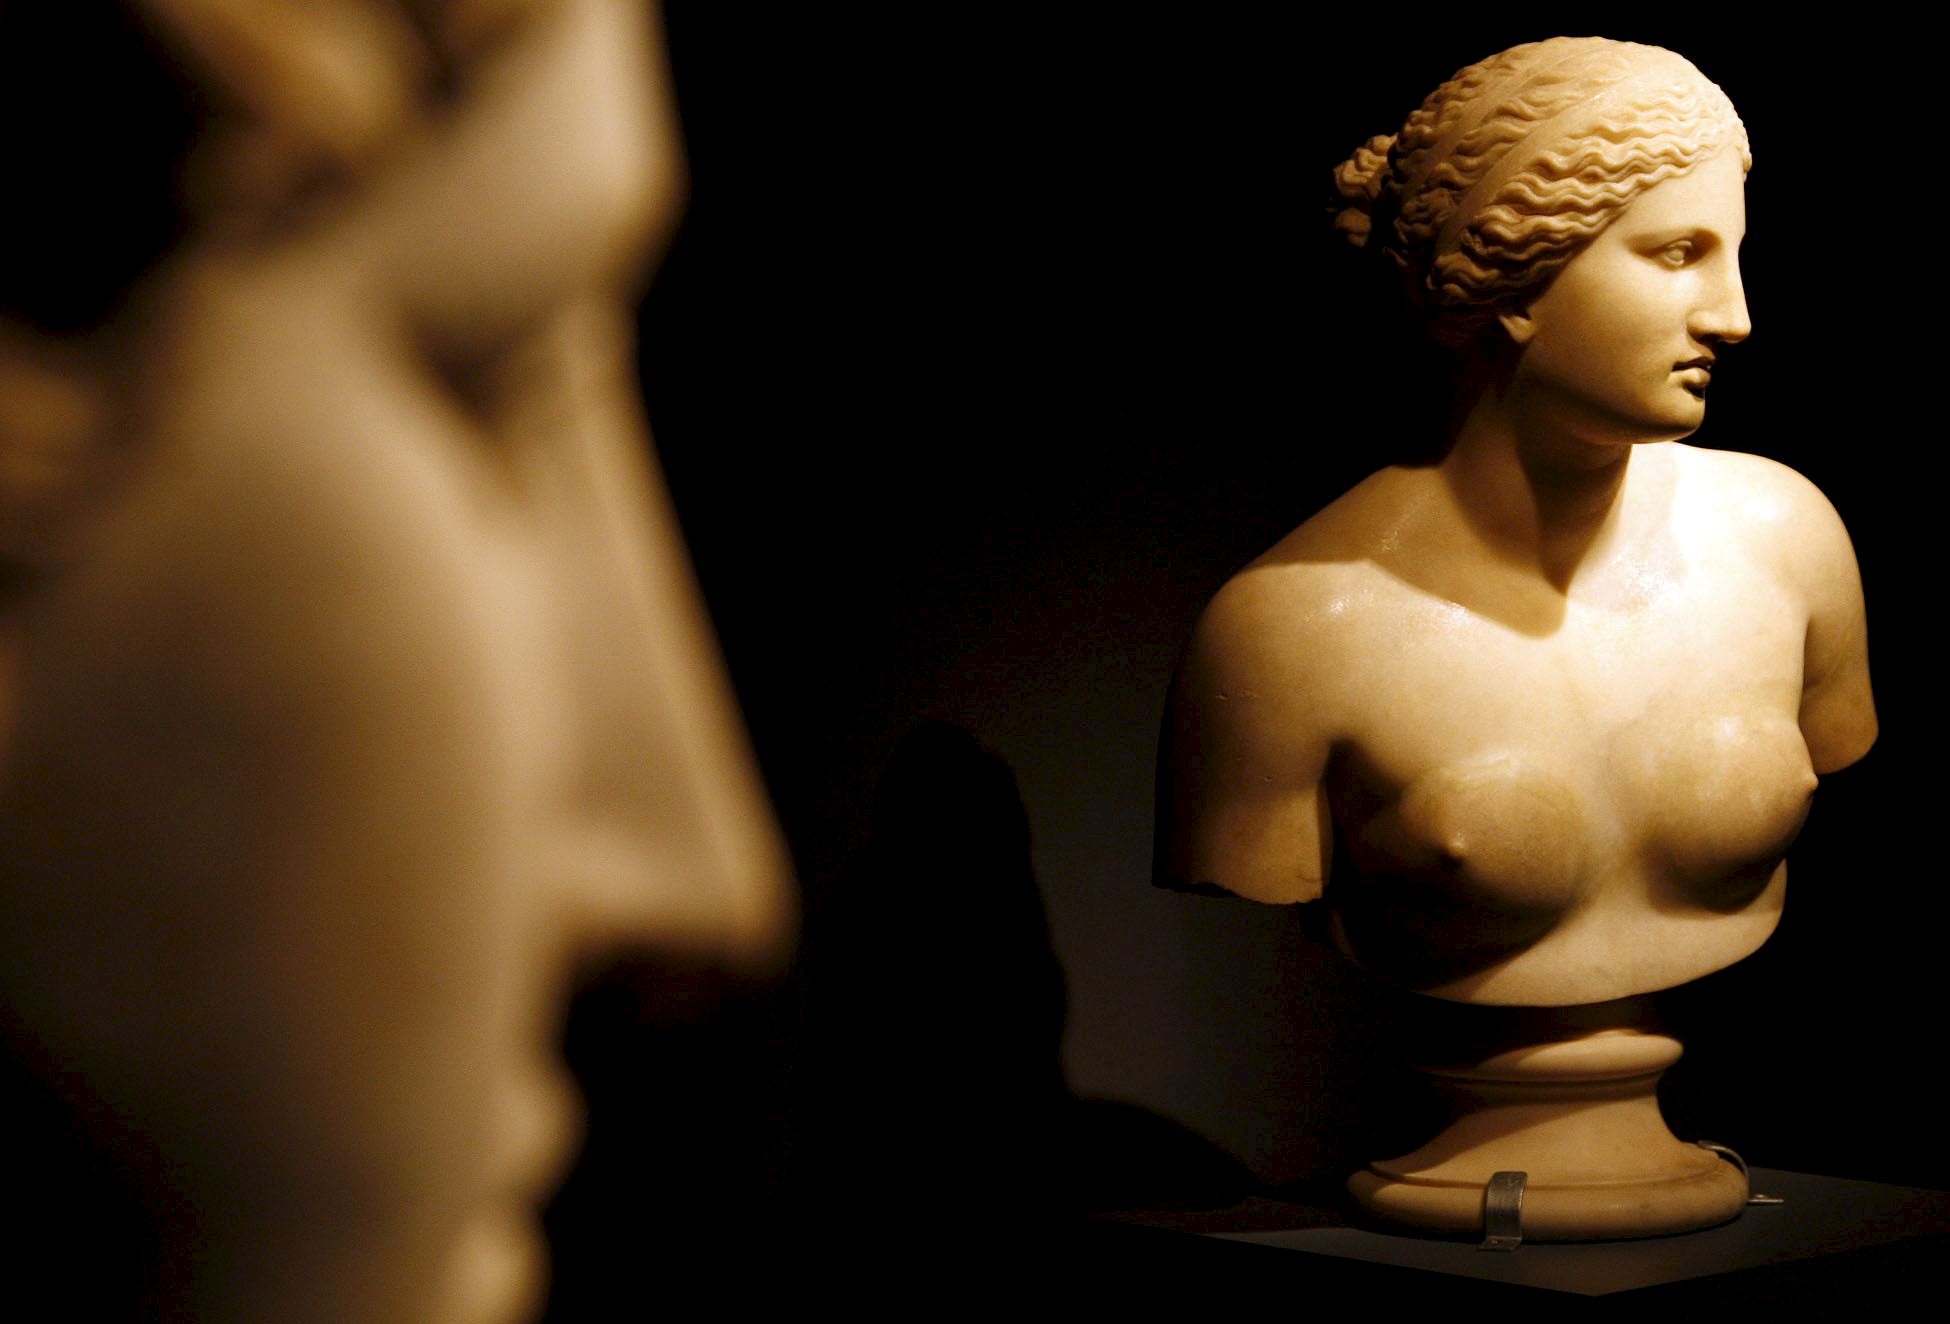 Funcionarios del Ministerio de Cultura de Italia confirmaron la autenticidad de la pieza histórica.